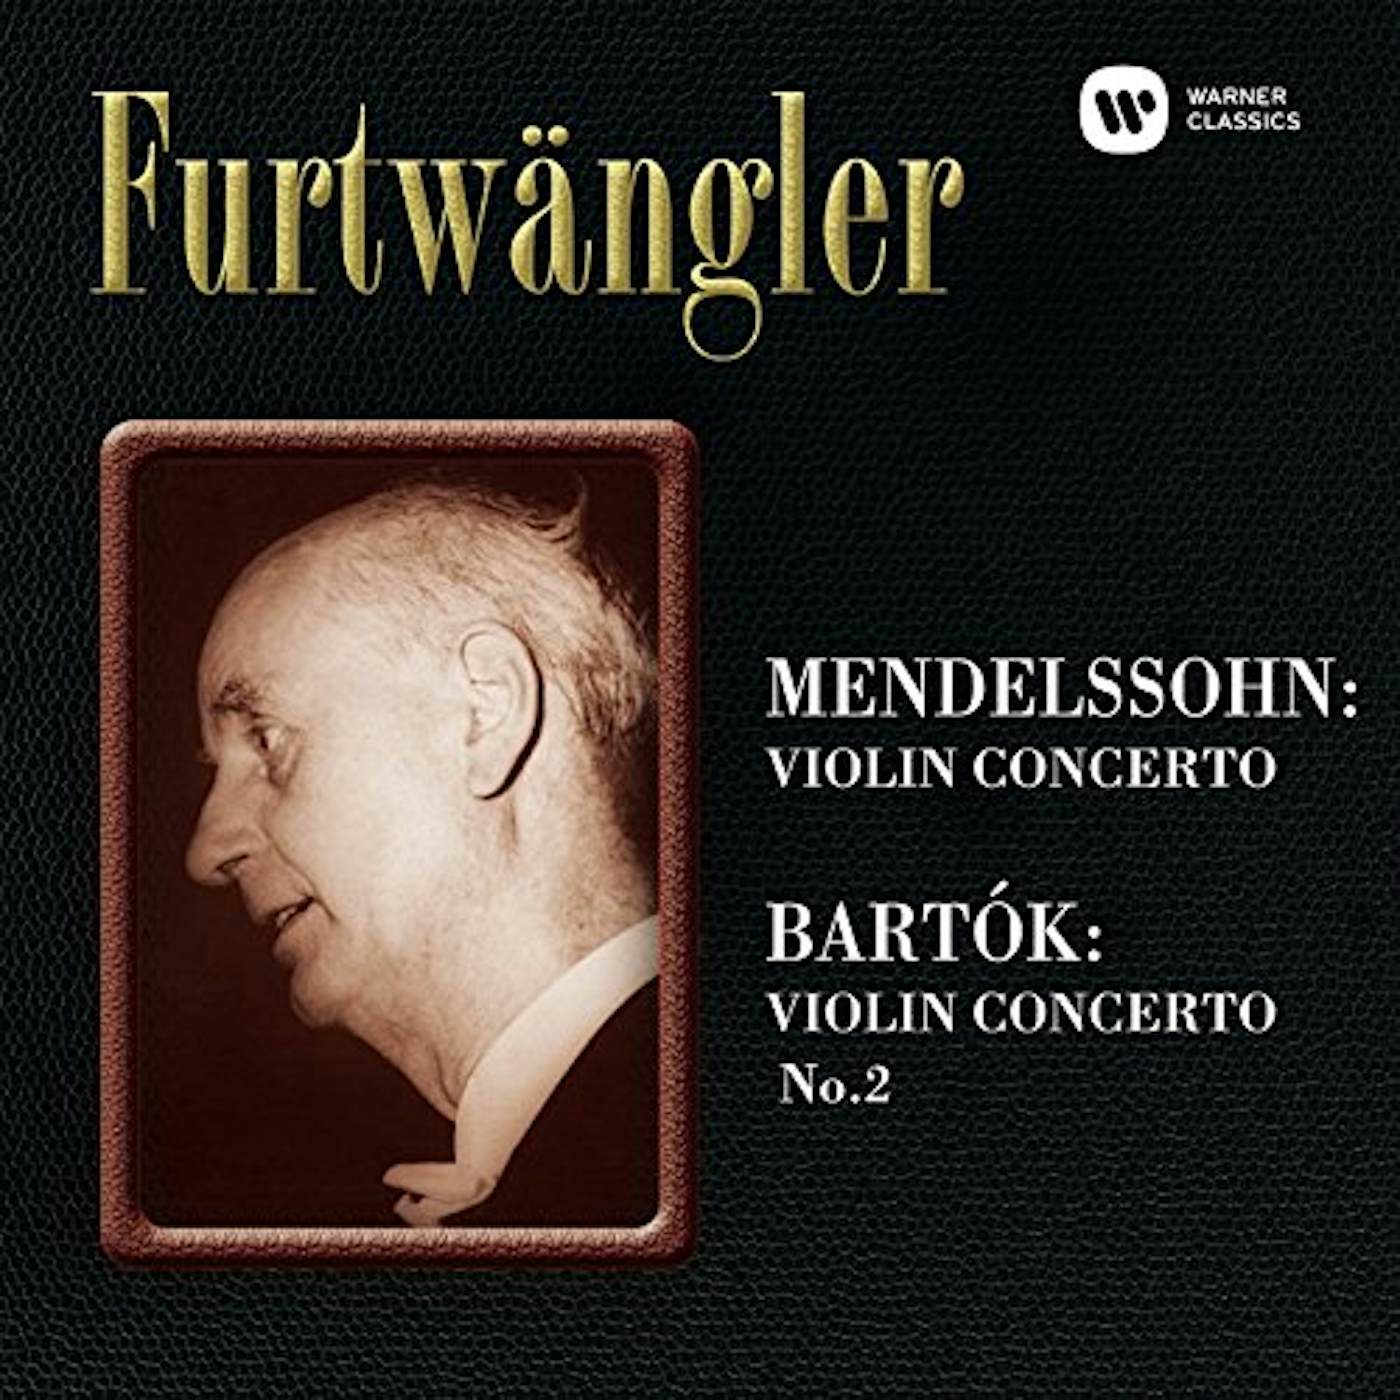 Wilhelm Furtwängler MENDELSSOHN: VIOLIN CONCERTO. BARTOK Super Audio CD